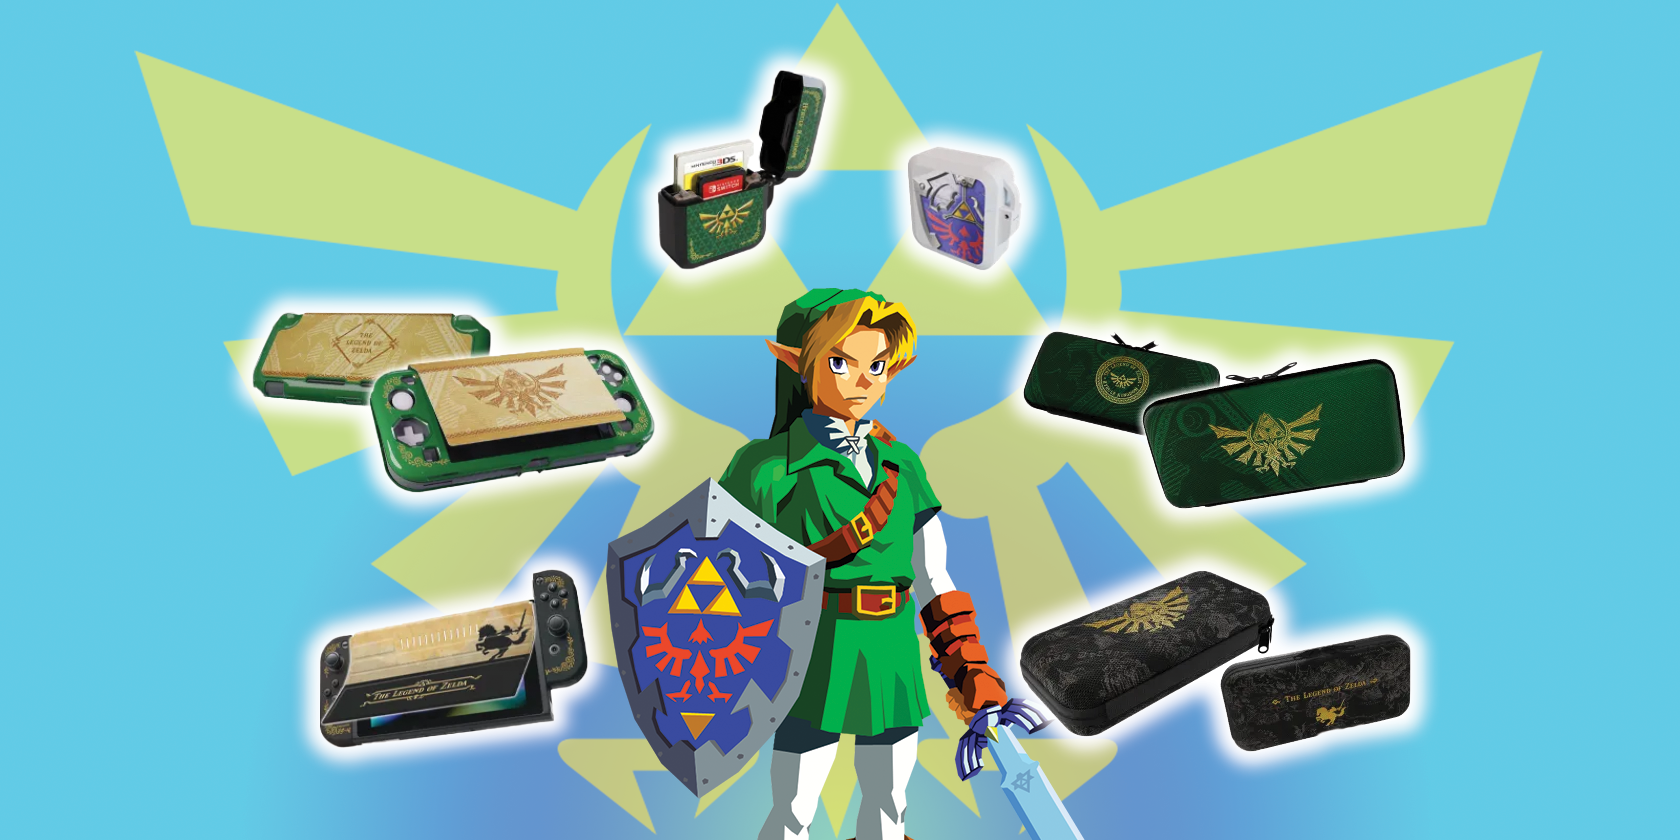 IINE Zelda Triforce Designs Game Accessories for Nintendo Switch